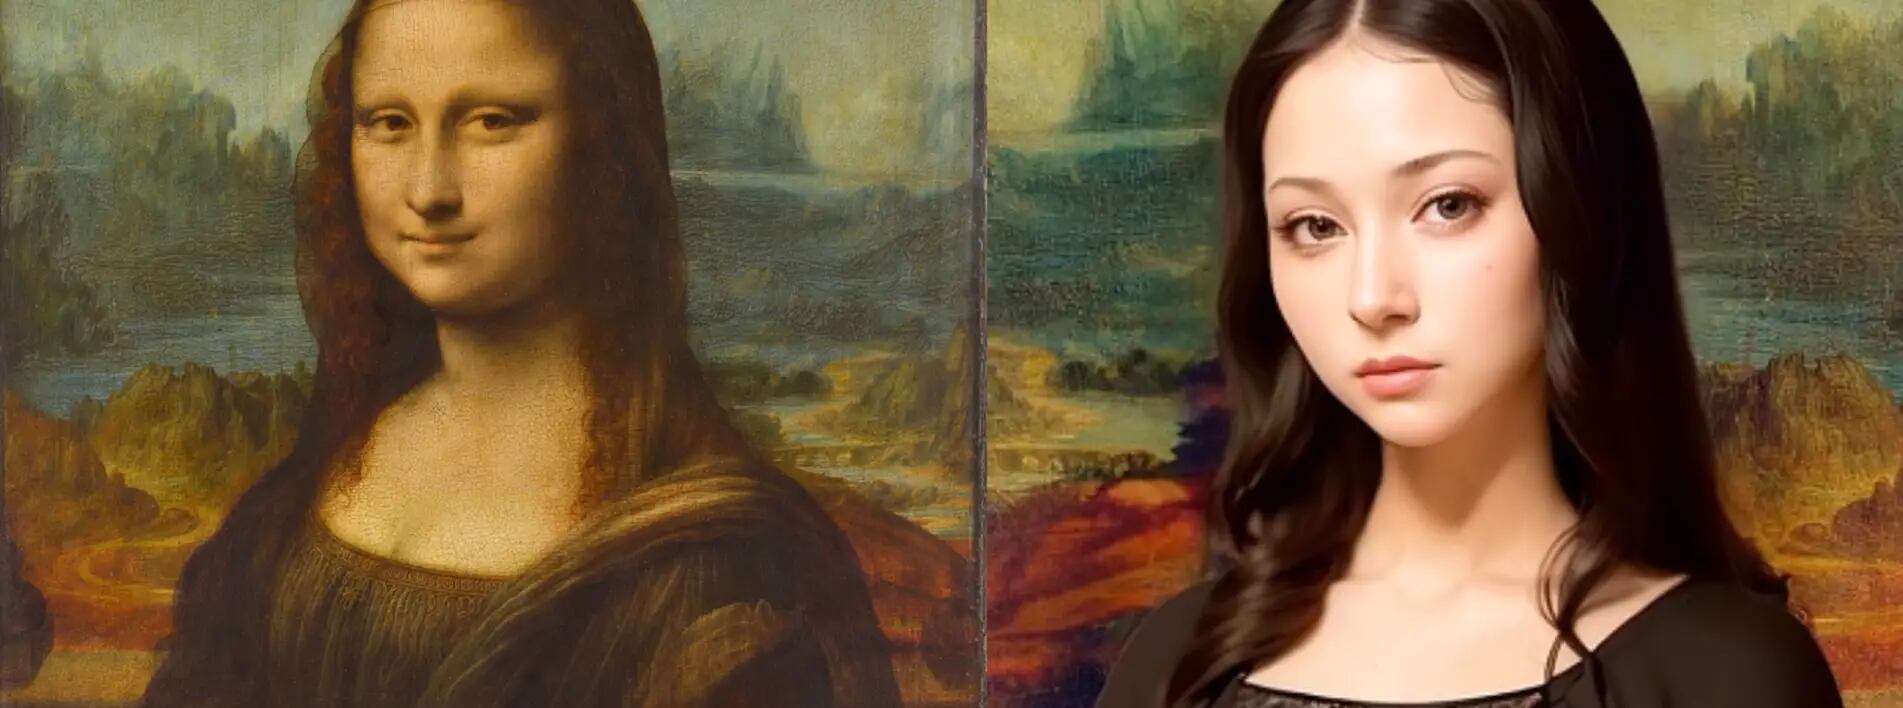 Así Se Vería La Mona Lisa En El Mundo Moderno Según Inteligencia Artificial 5527